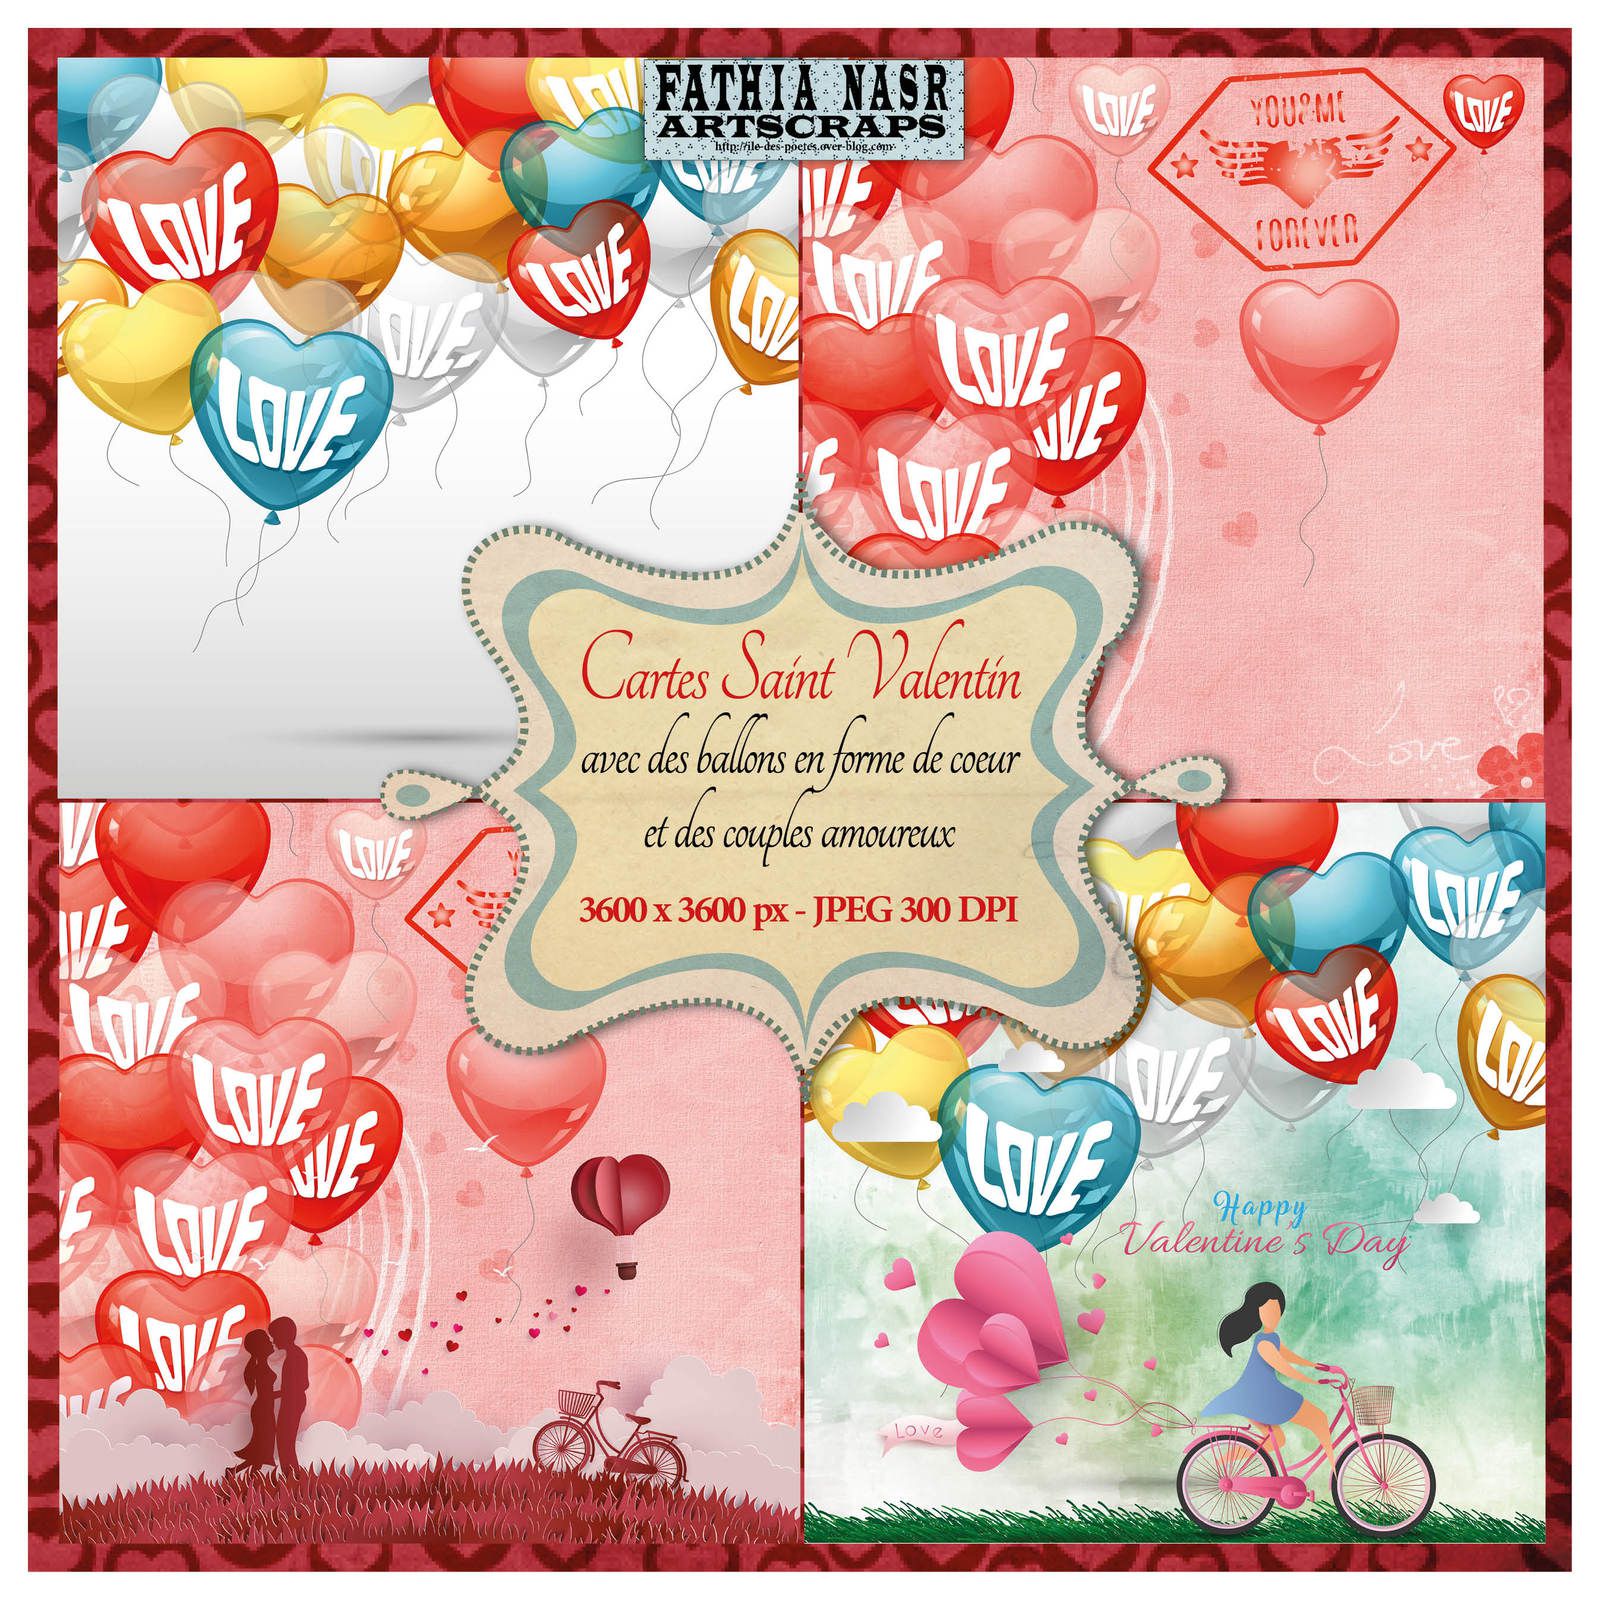 10 Magnifiques Cartes De Vœux De La Saint Valentin A Imprimer Joyeuse Saint Valentin Happy Valentine S Day Fahtia Nasr Art Scrapbooking Et Litterature